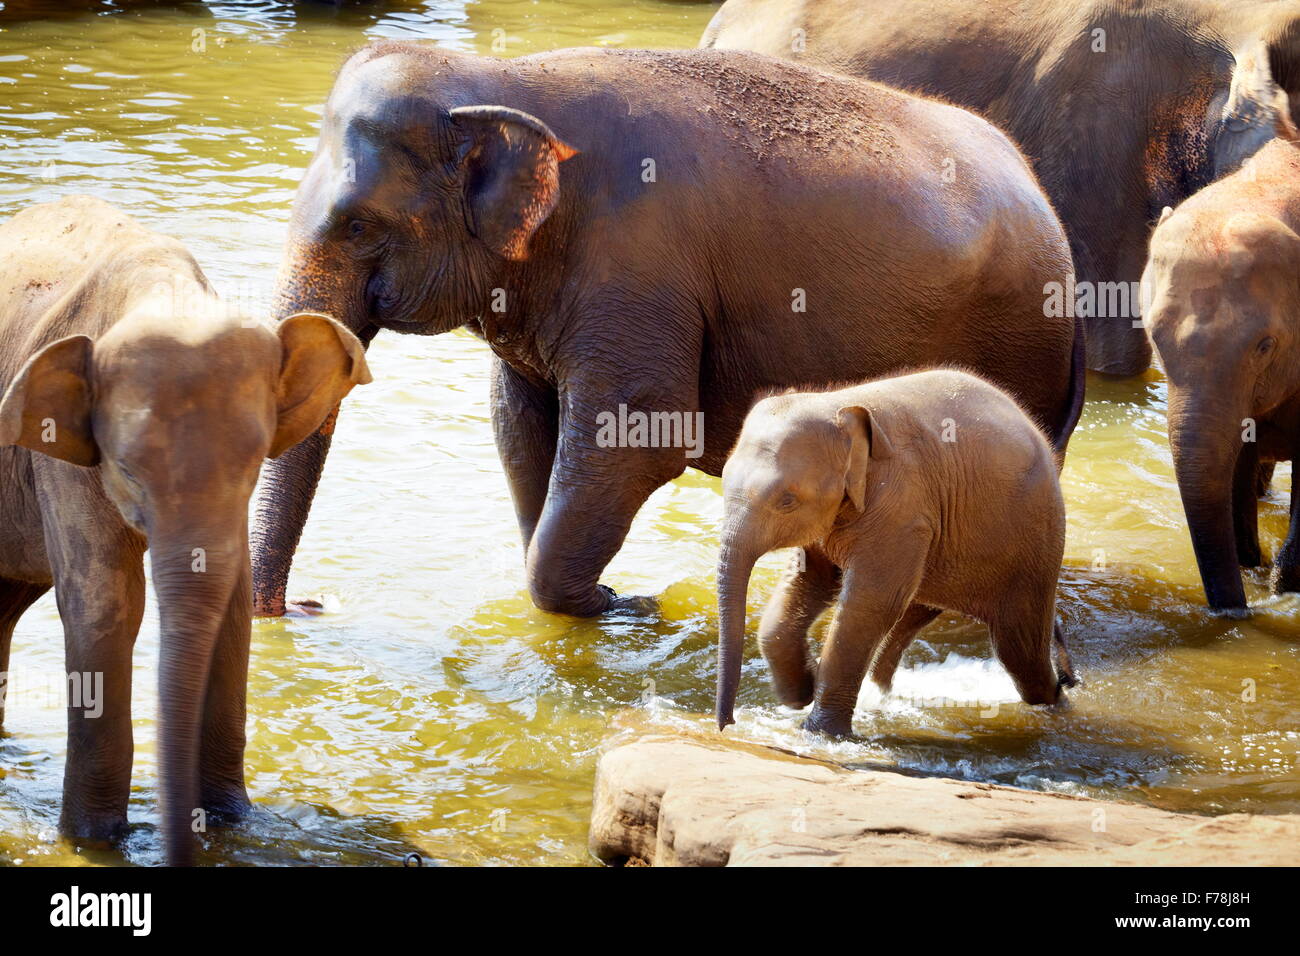 Sri Lanka - les éléphants dans la baignoire - éléphant de Pinnawela orphelinat pour éléphants d'Asie sauvages Banque D'Images